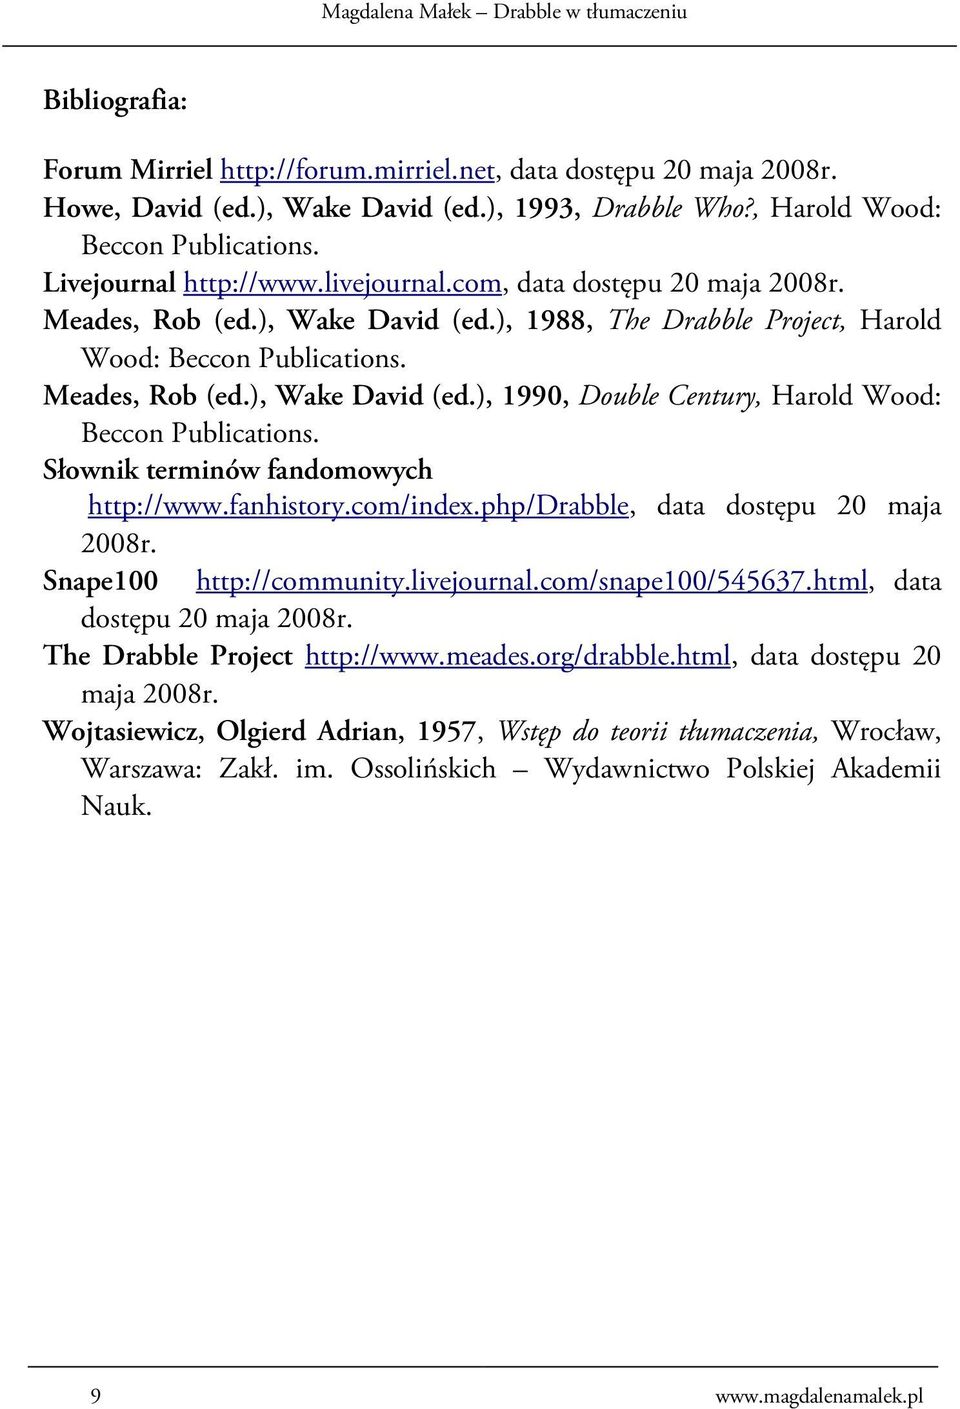 Słownik terminów fandomowych http://www.fanhistory.com/index.php/drabble, data dostępu 20 maja 2008r. Snape100 http://community.livejournal.com/snape100/545637.html, data dostępu 20 maja 2008r.